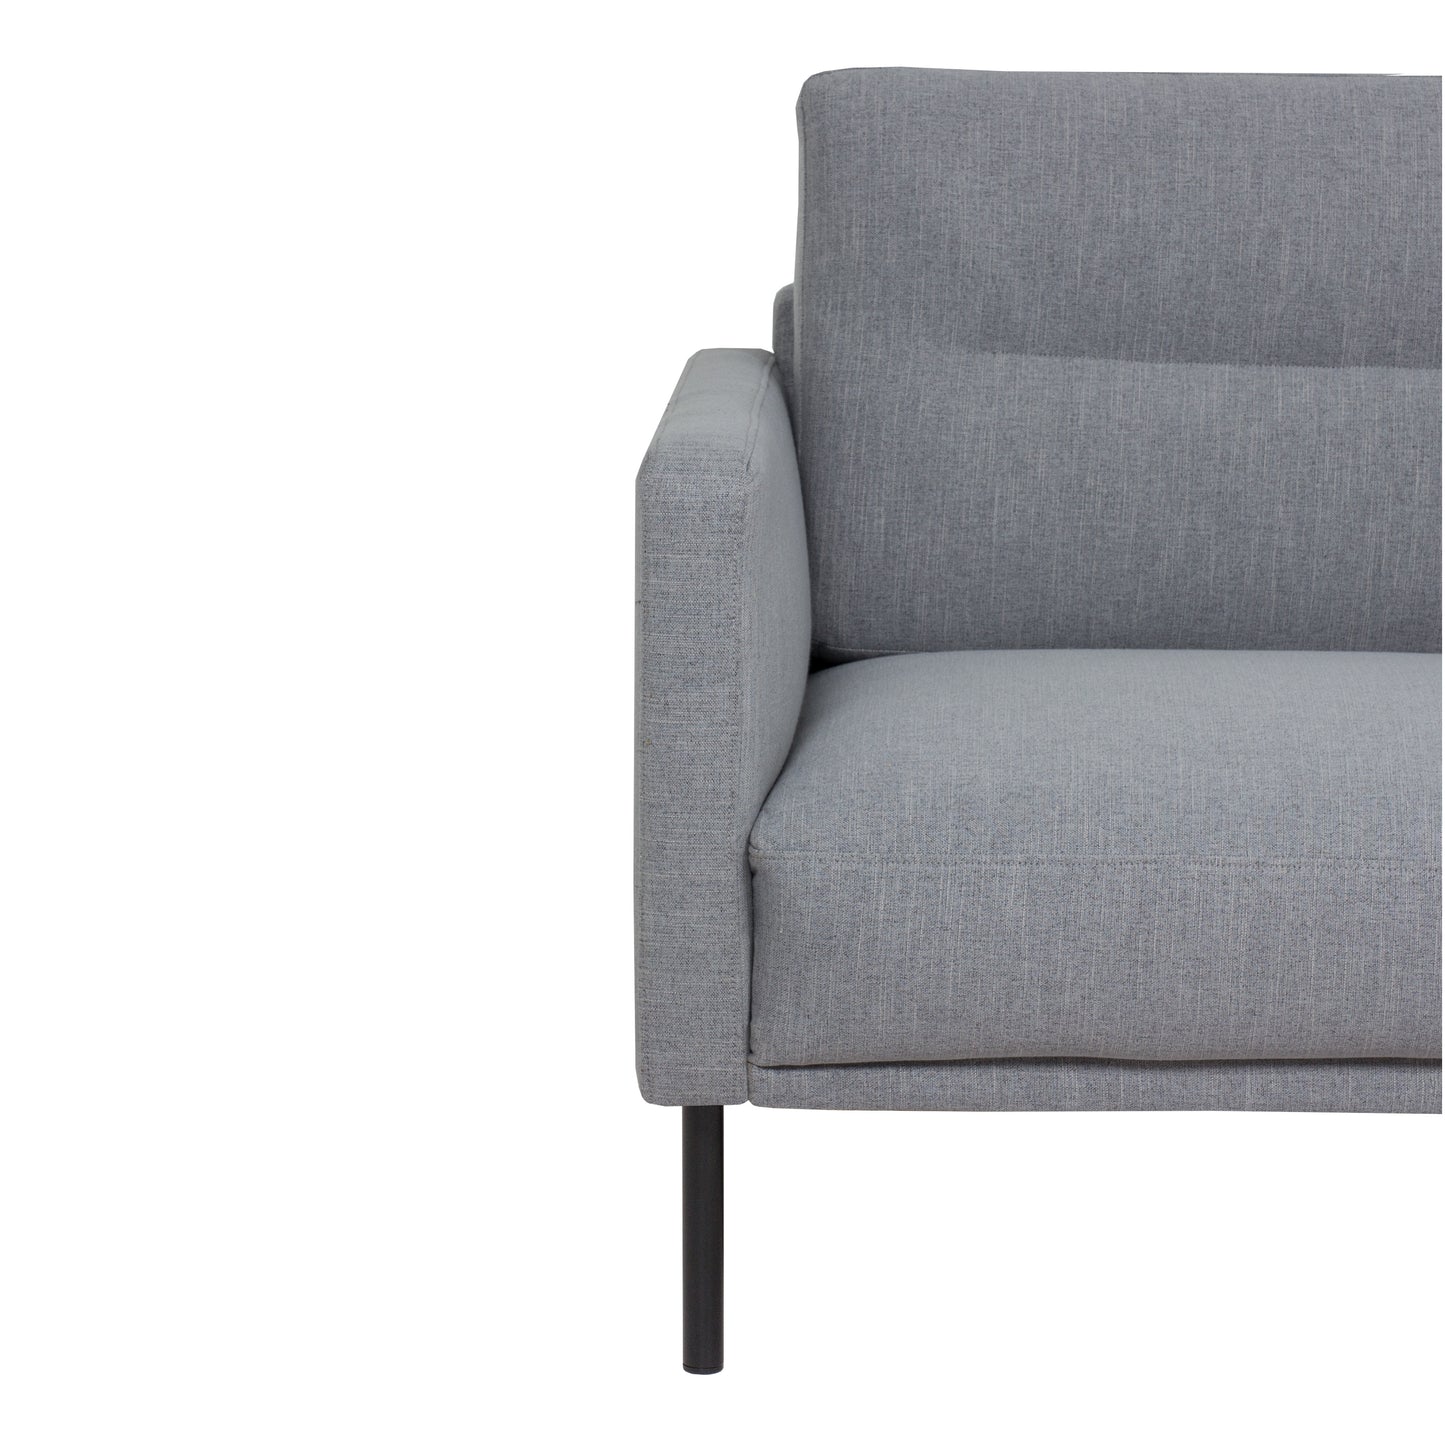 Larvik  2.5 Seater Sofa - Grey, Black Legs